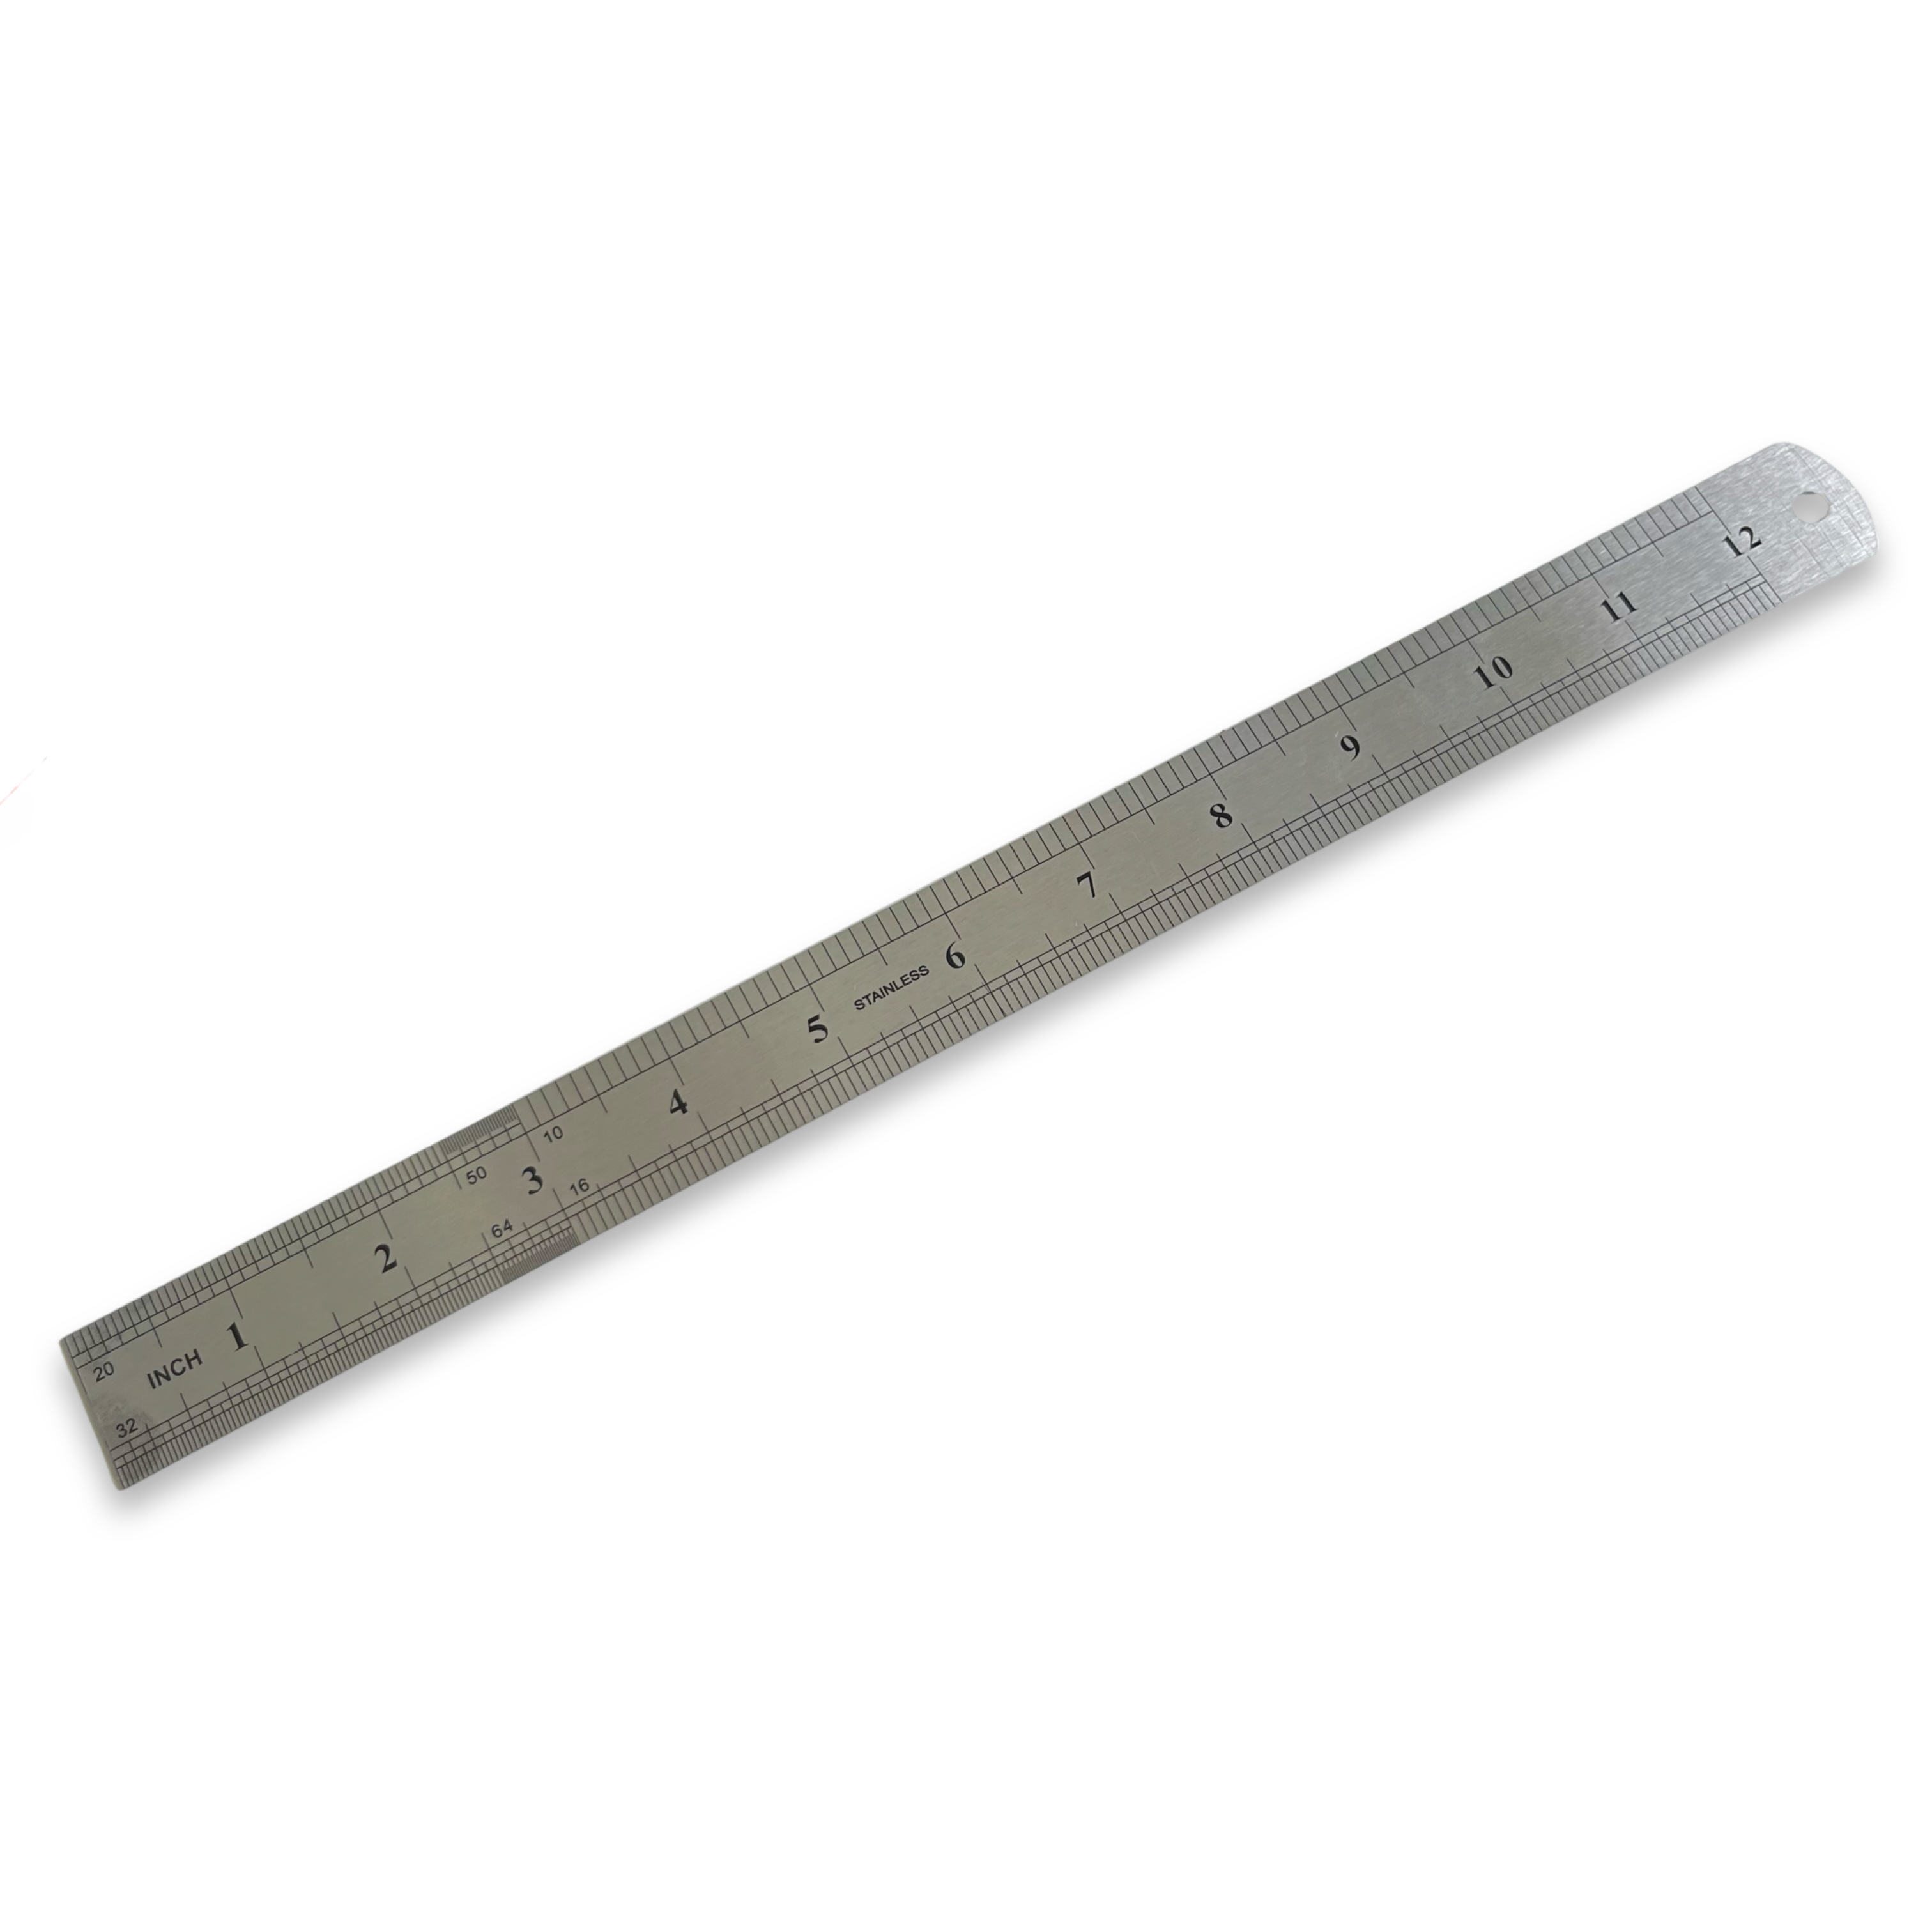 300mm / 12" Stainless Steel Ruler